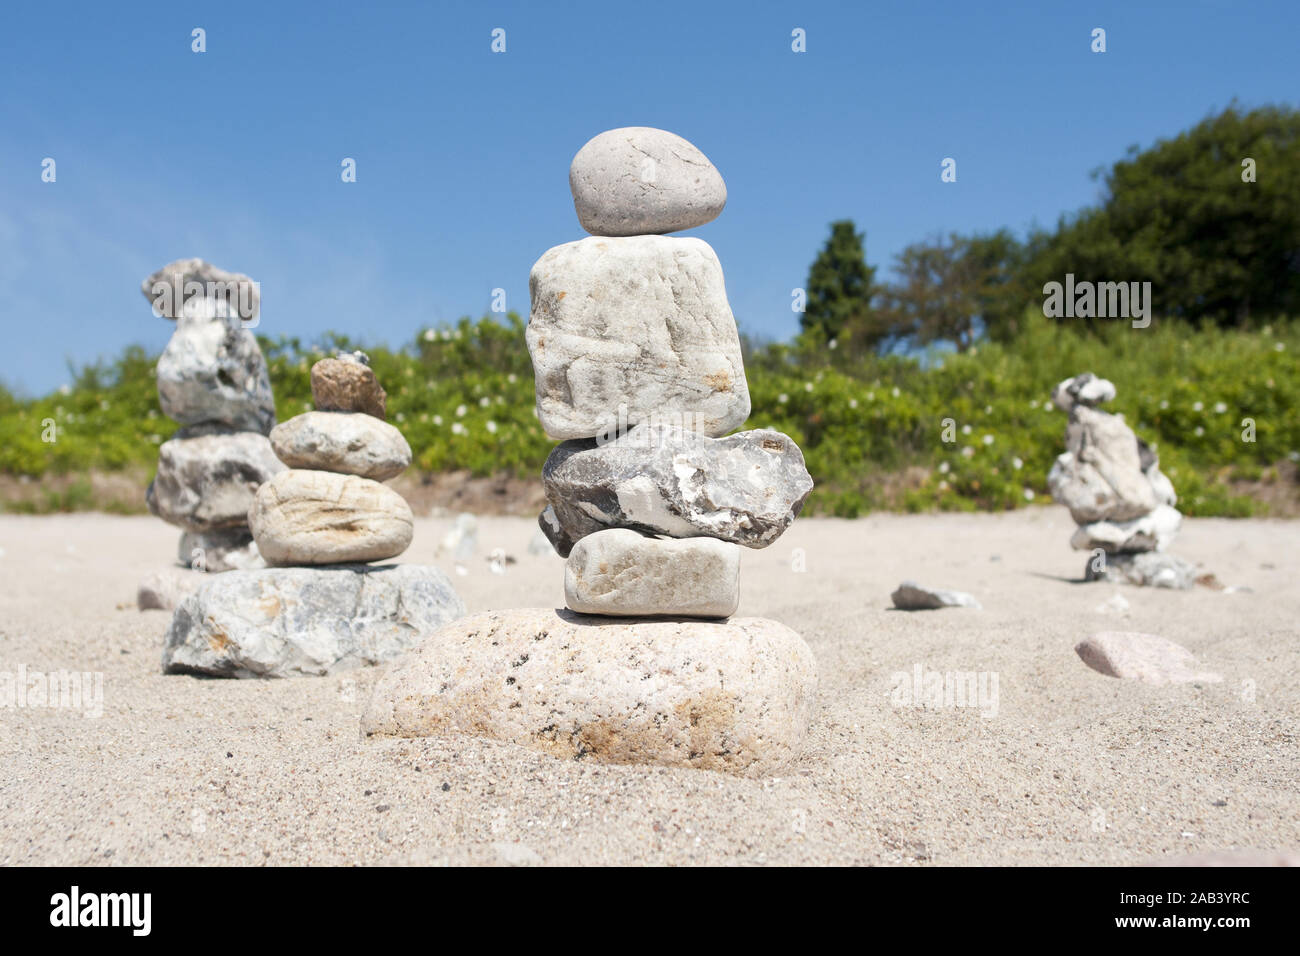 Steinstapel am Strand von Langholz |tas de pierres sur la plage off Langholz| Banque D'Images